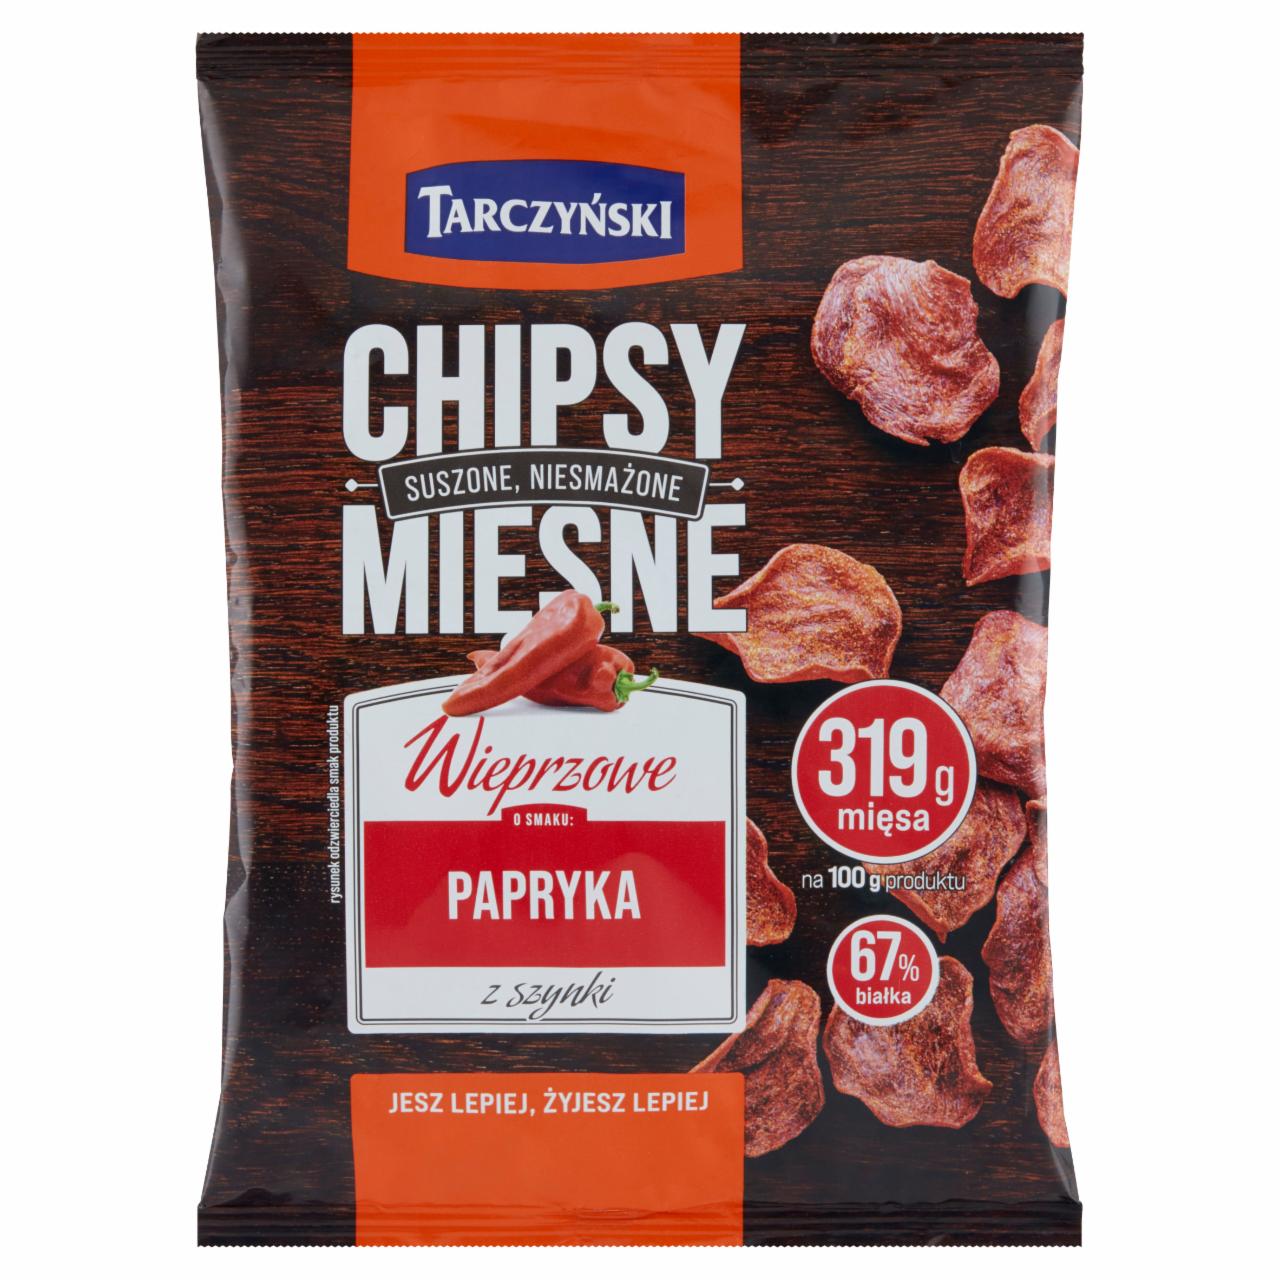 Zdjęcia - Chipsy mięsne wieprzowe papryka z szynką Tarczyński